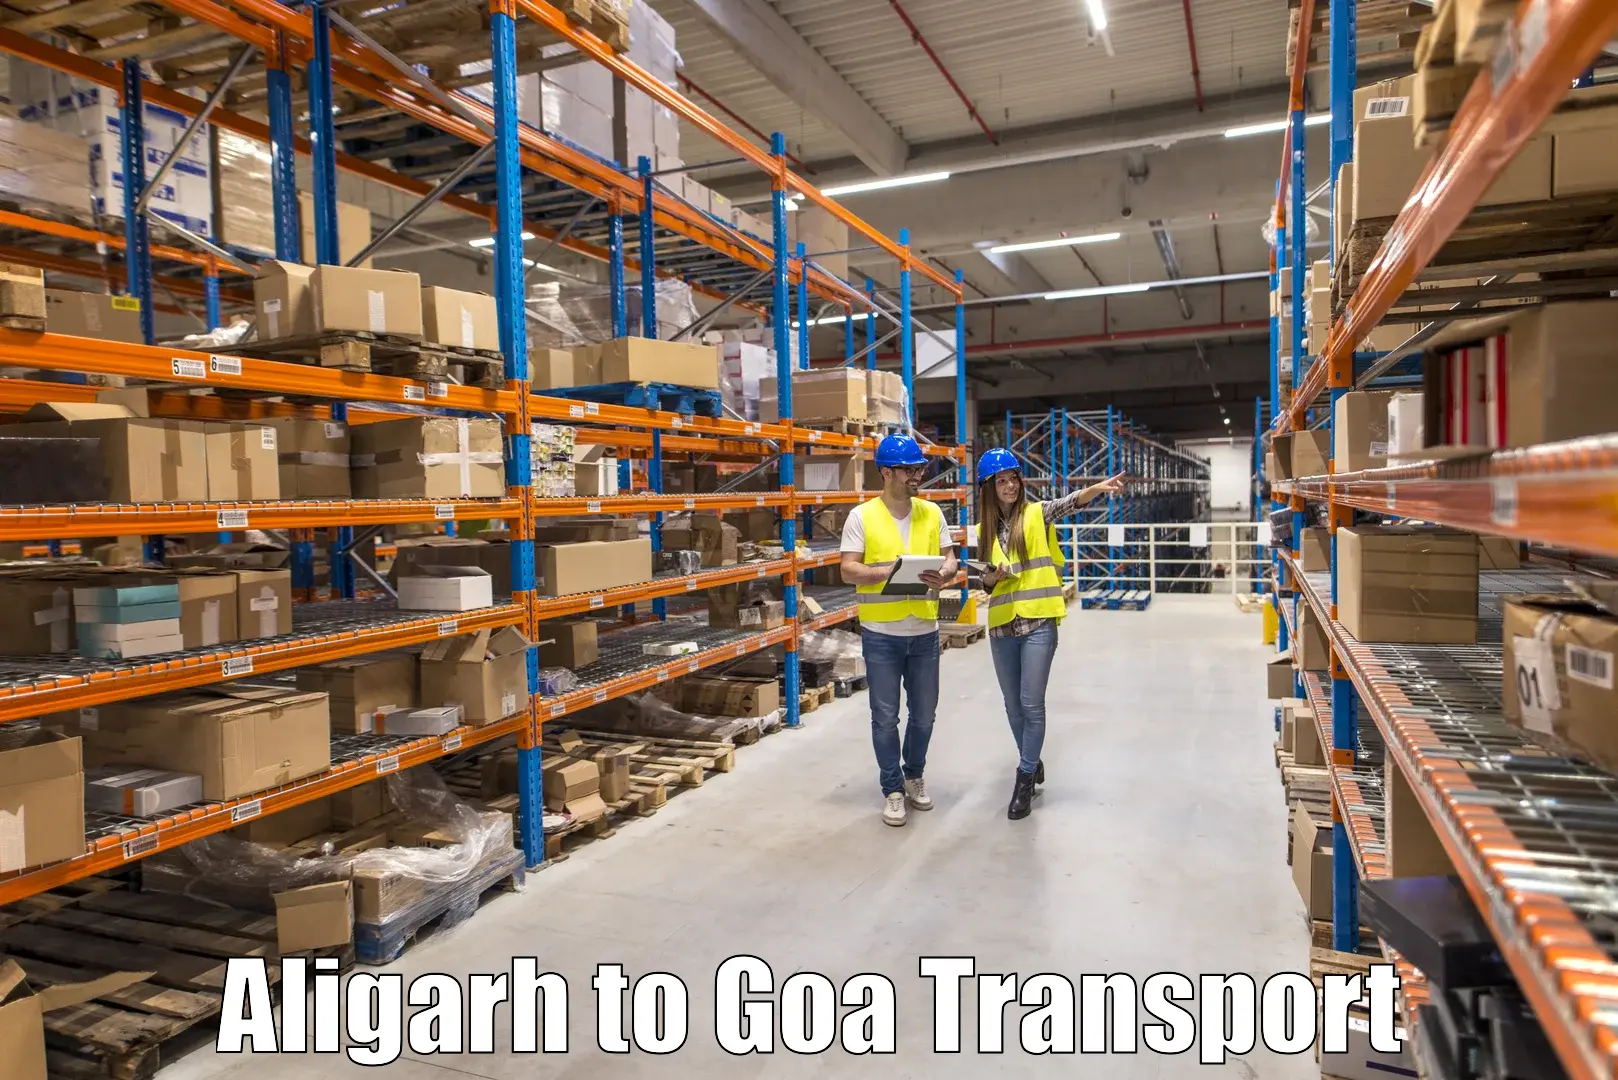 Daily transport service Aligarh to Canacona